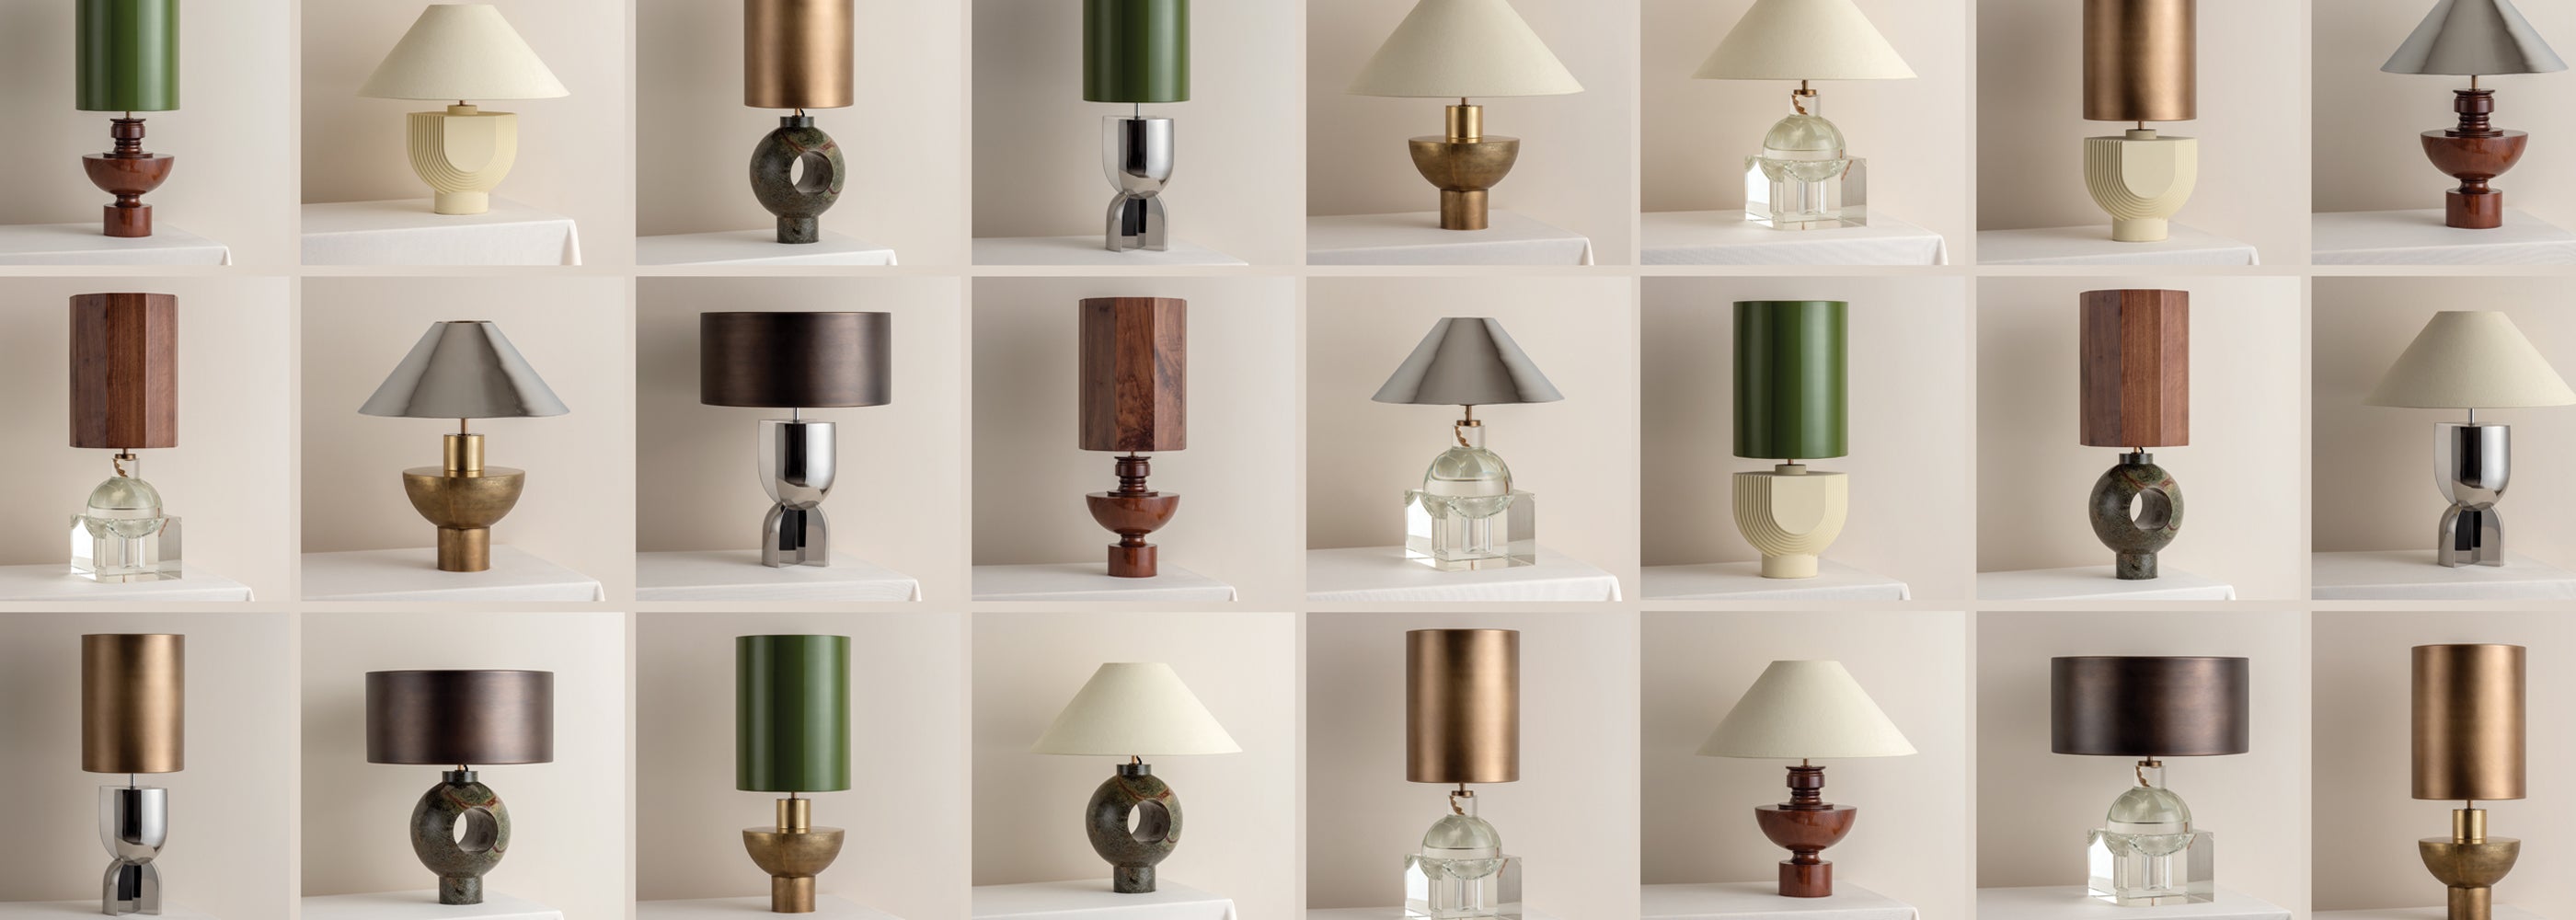 ELLE Decoration, Lights & Lamps, Modern Designer Home Lighting